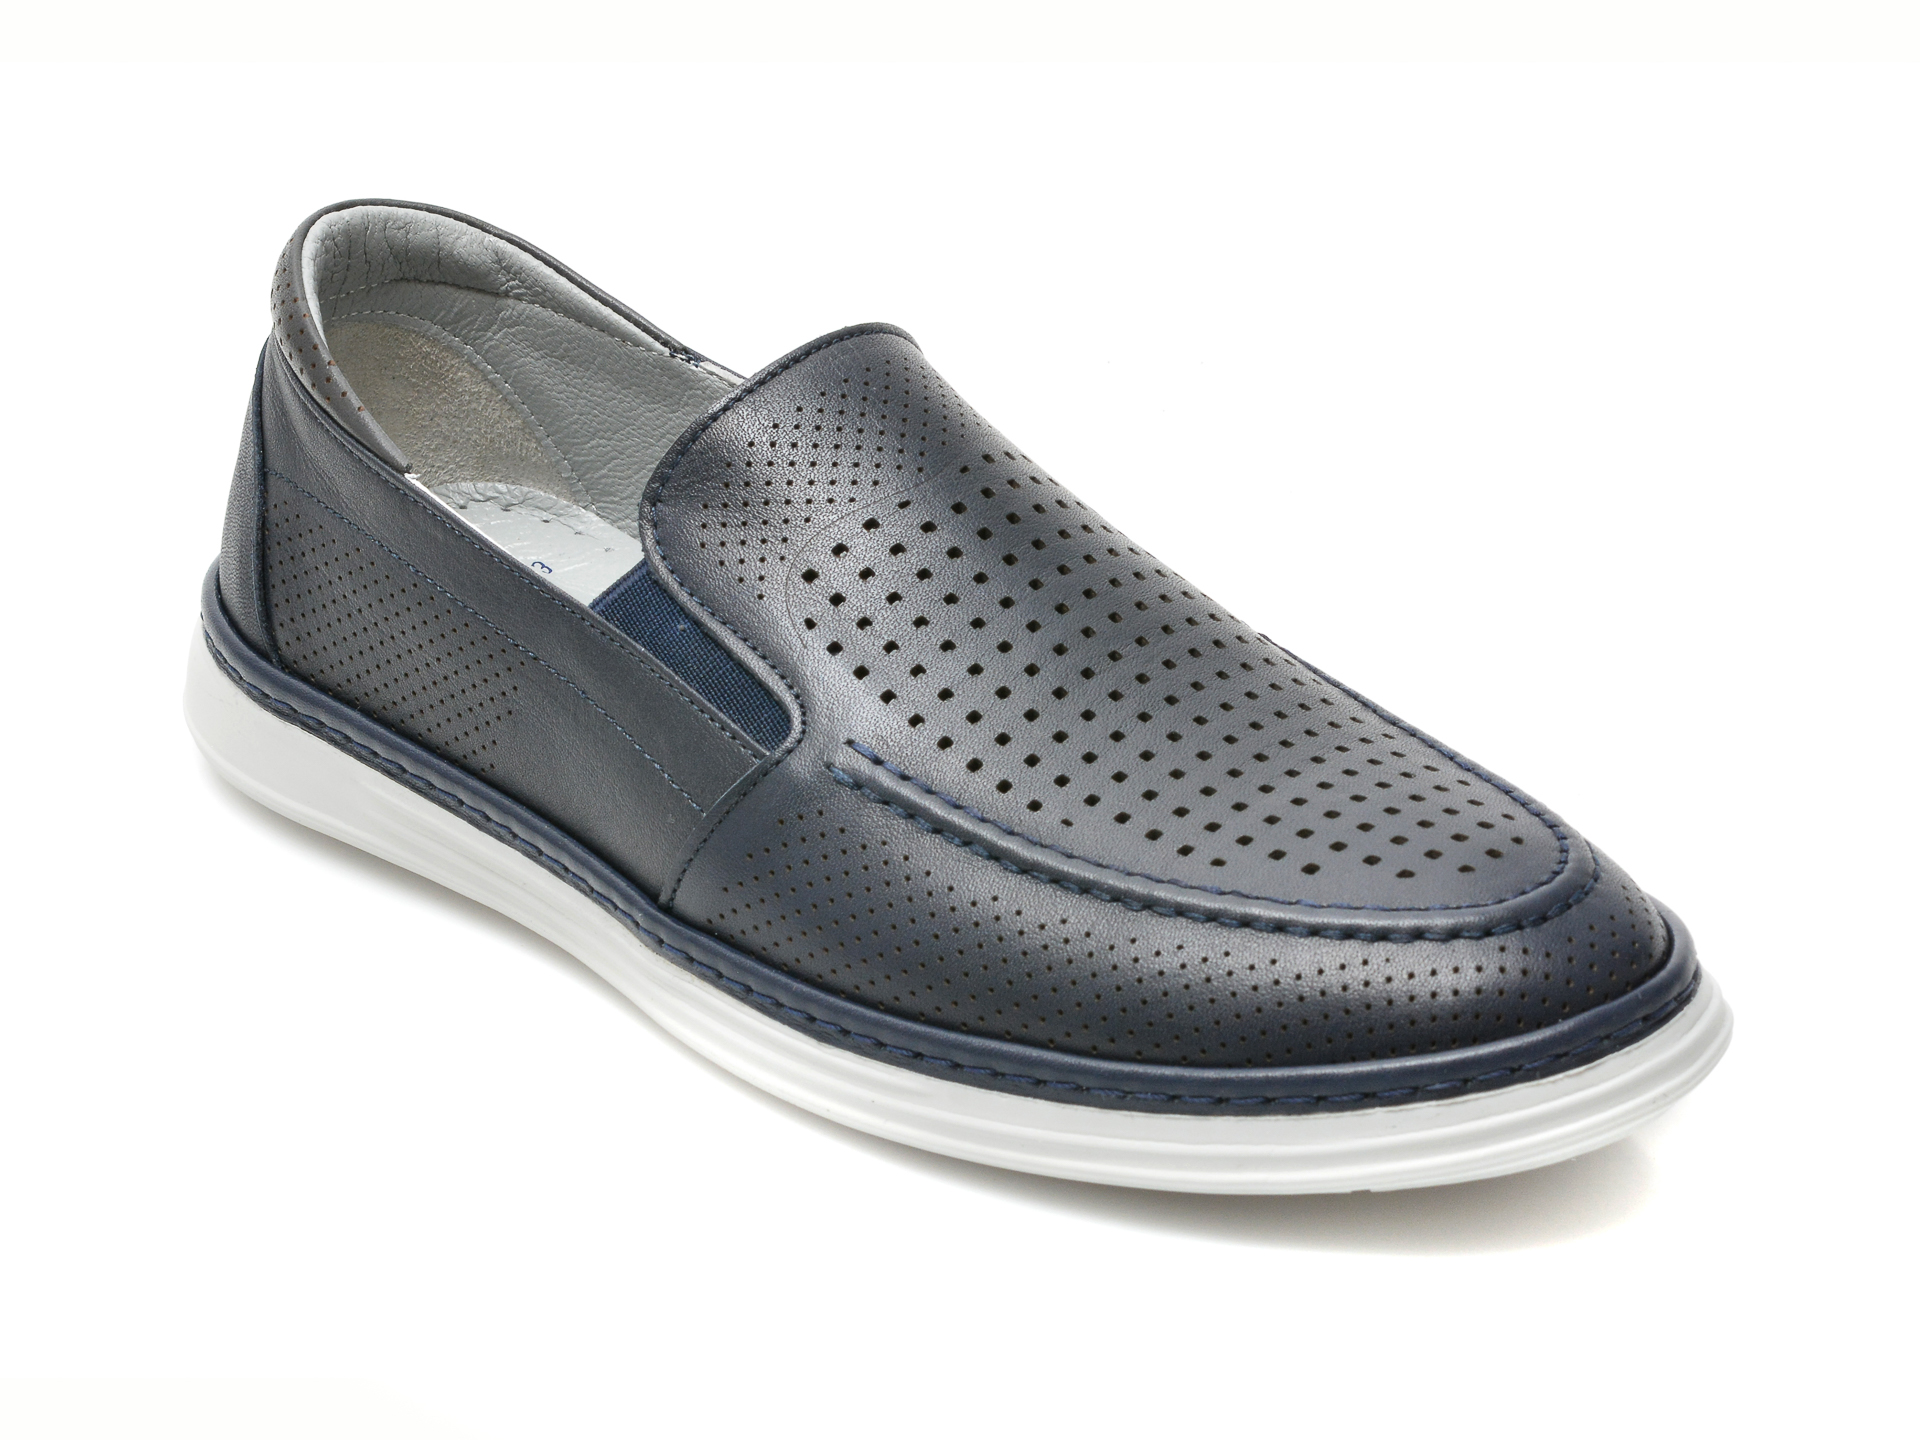 Pantofi OTTER albastri, 91855, din piele naturala Otter